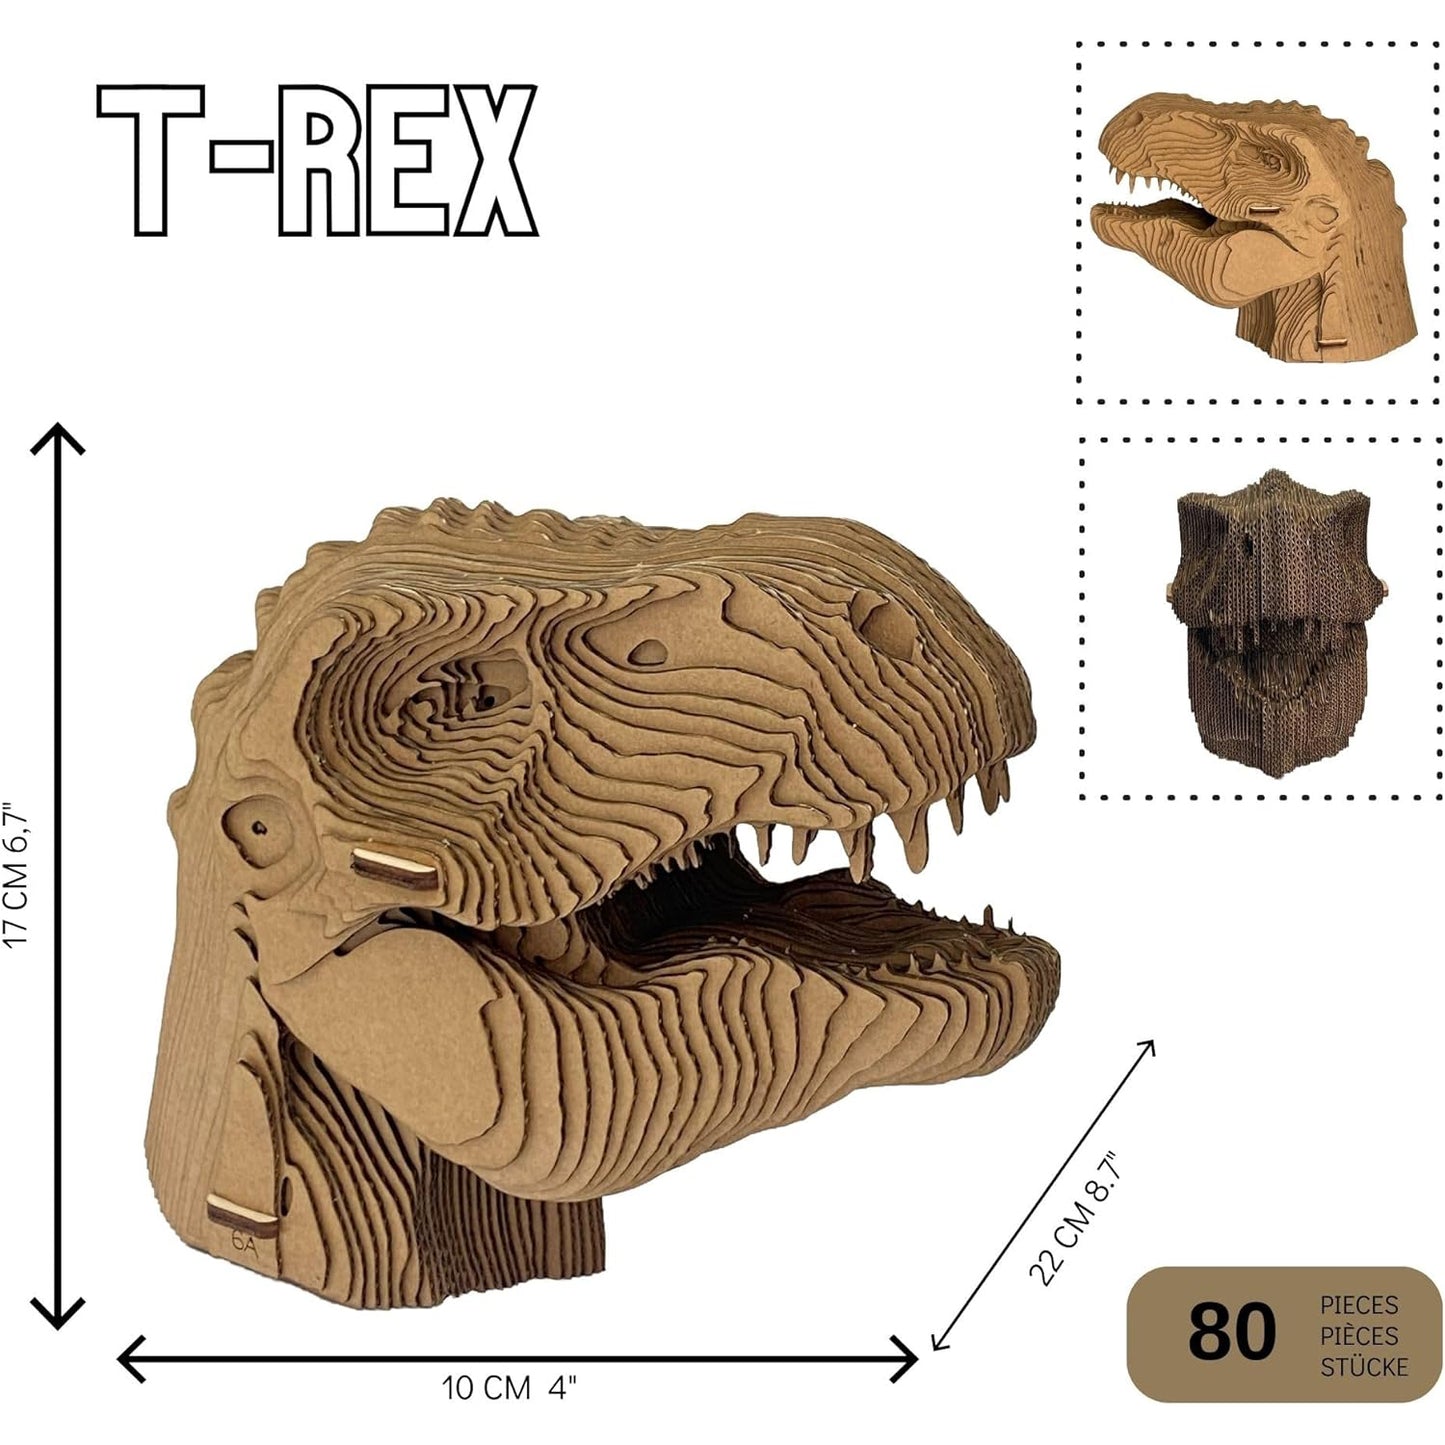 3D-huvudskulptur gjord av wellpapp - dinosaurien T-rex